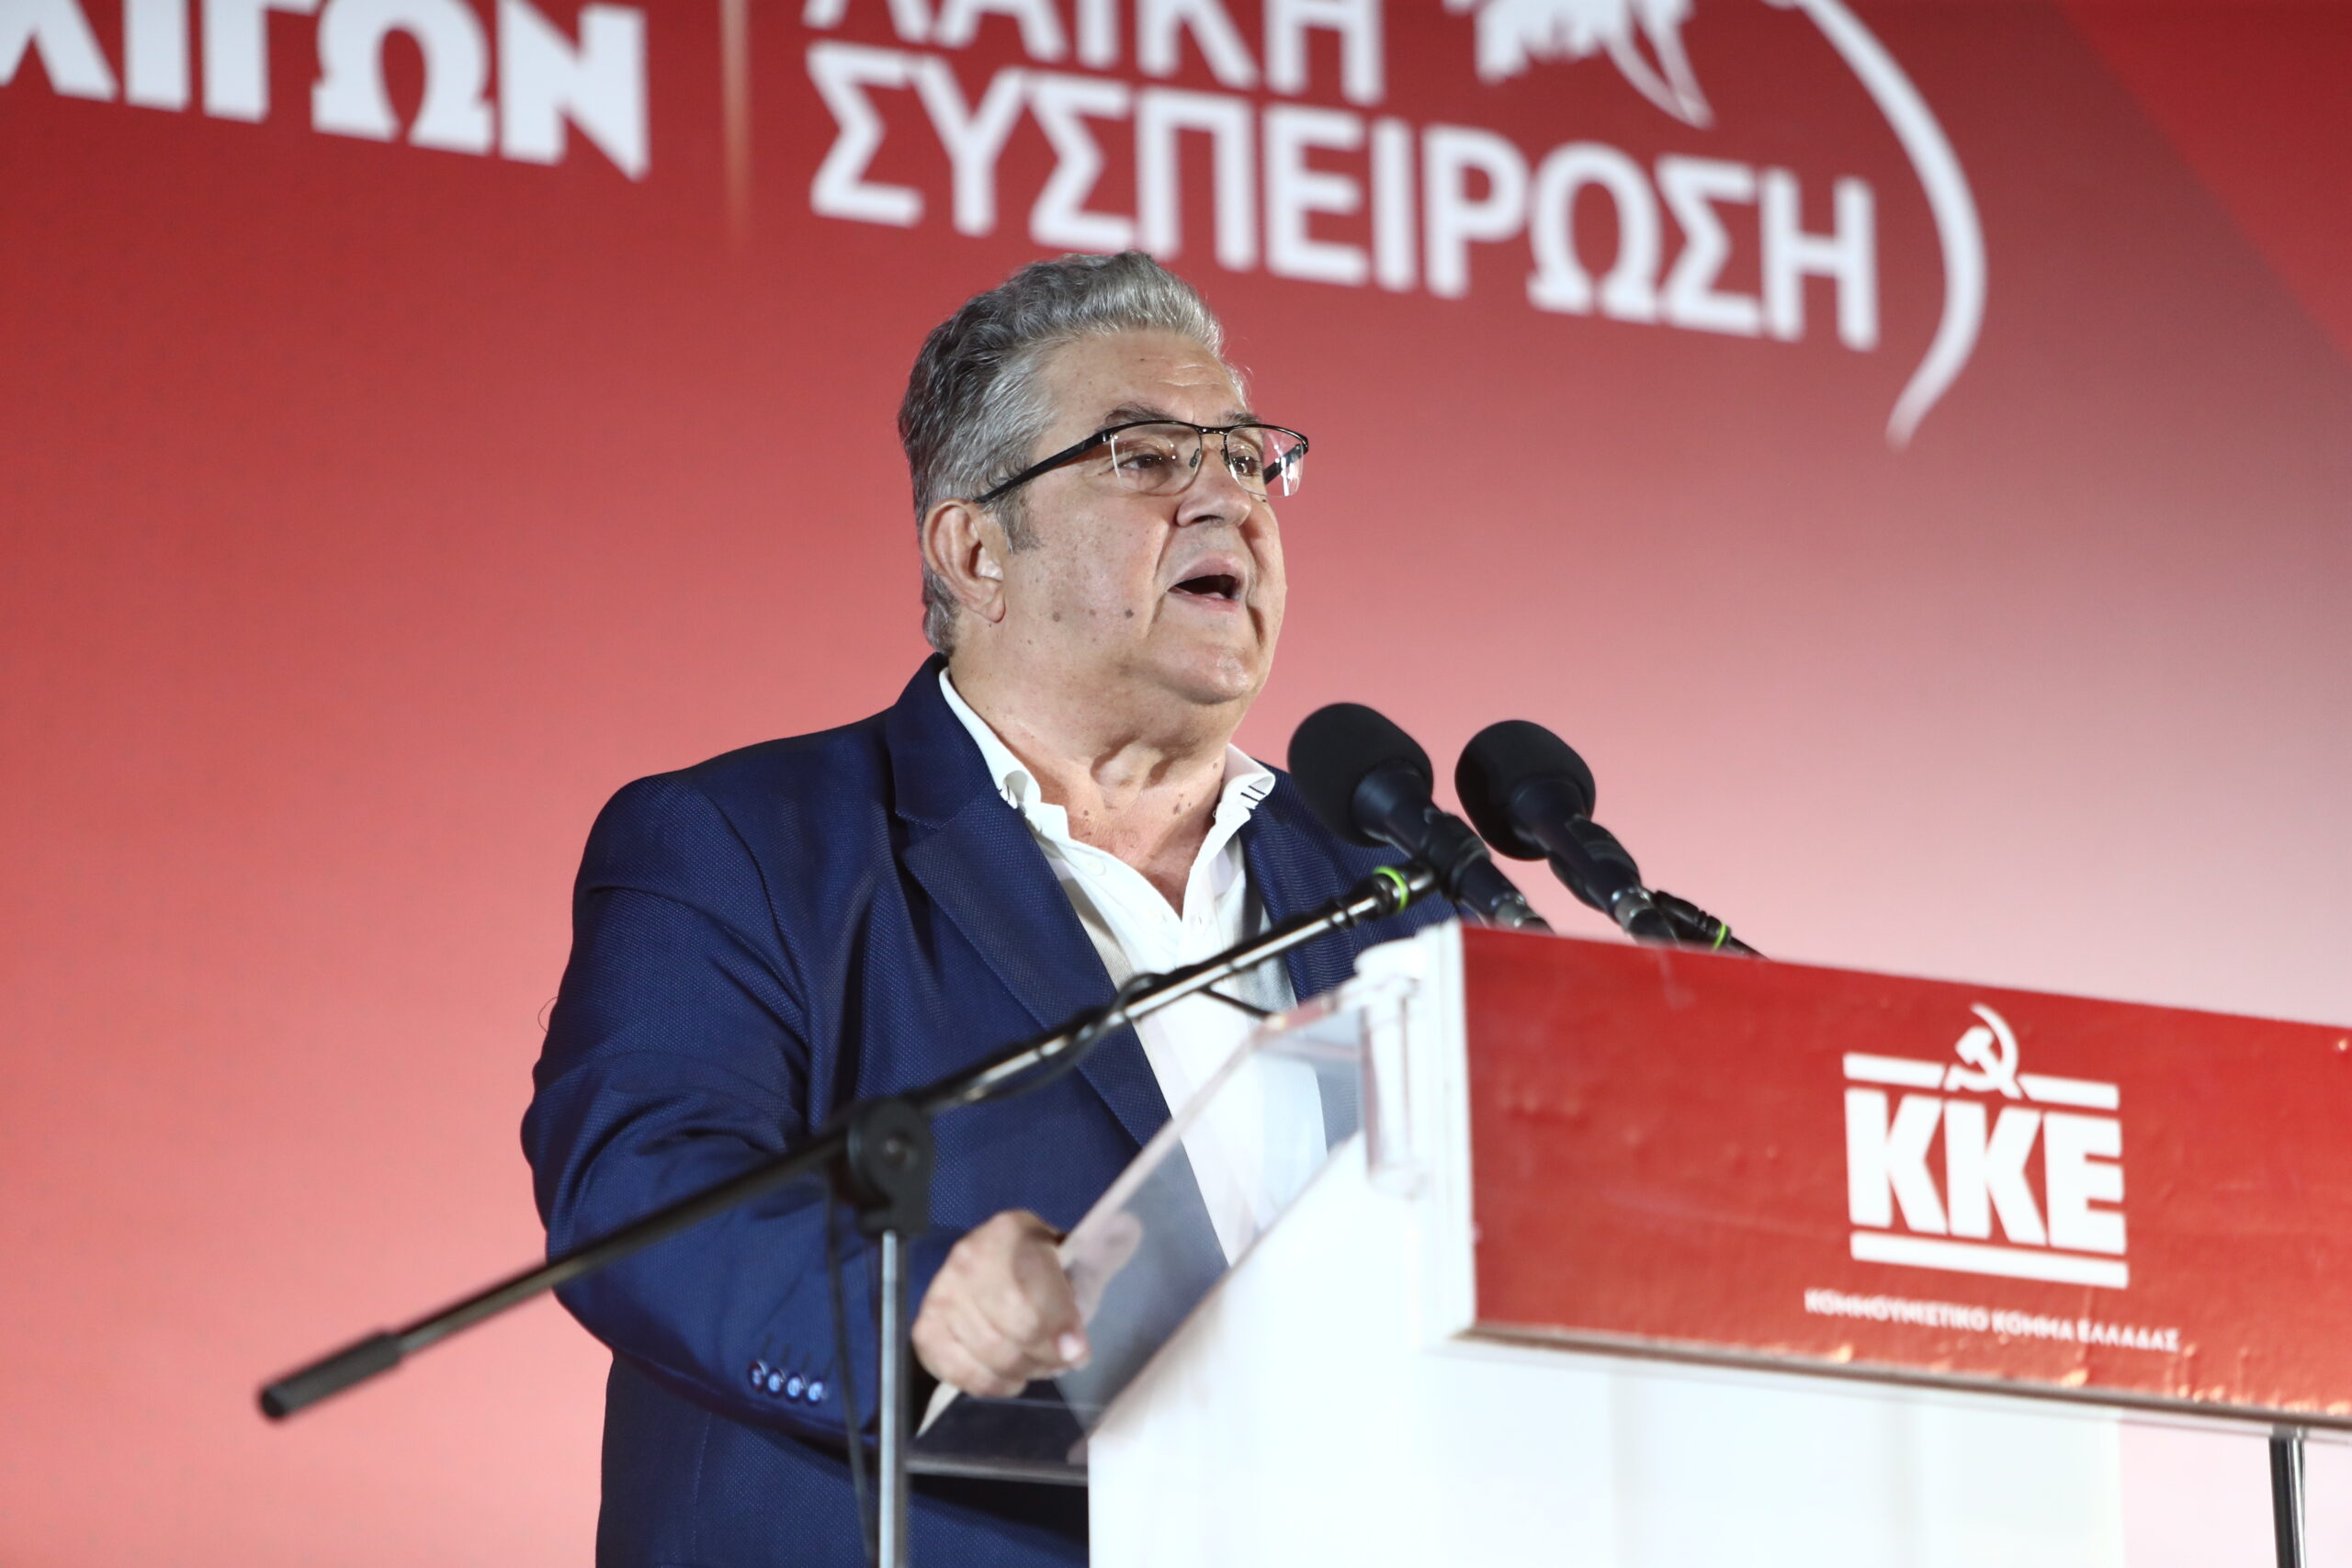 «Τώρα υπάρχει επιλογή και είναι η συμπόρευση με το ΚΚΕ», τόνισε ο Δημήτρης Κουτσούμπας για τις αυτοδιοικητικές εκλογές